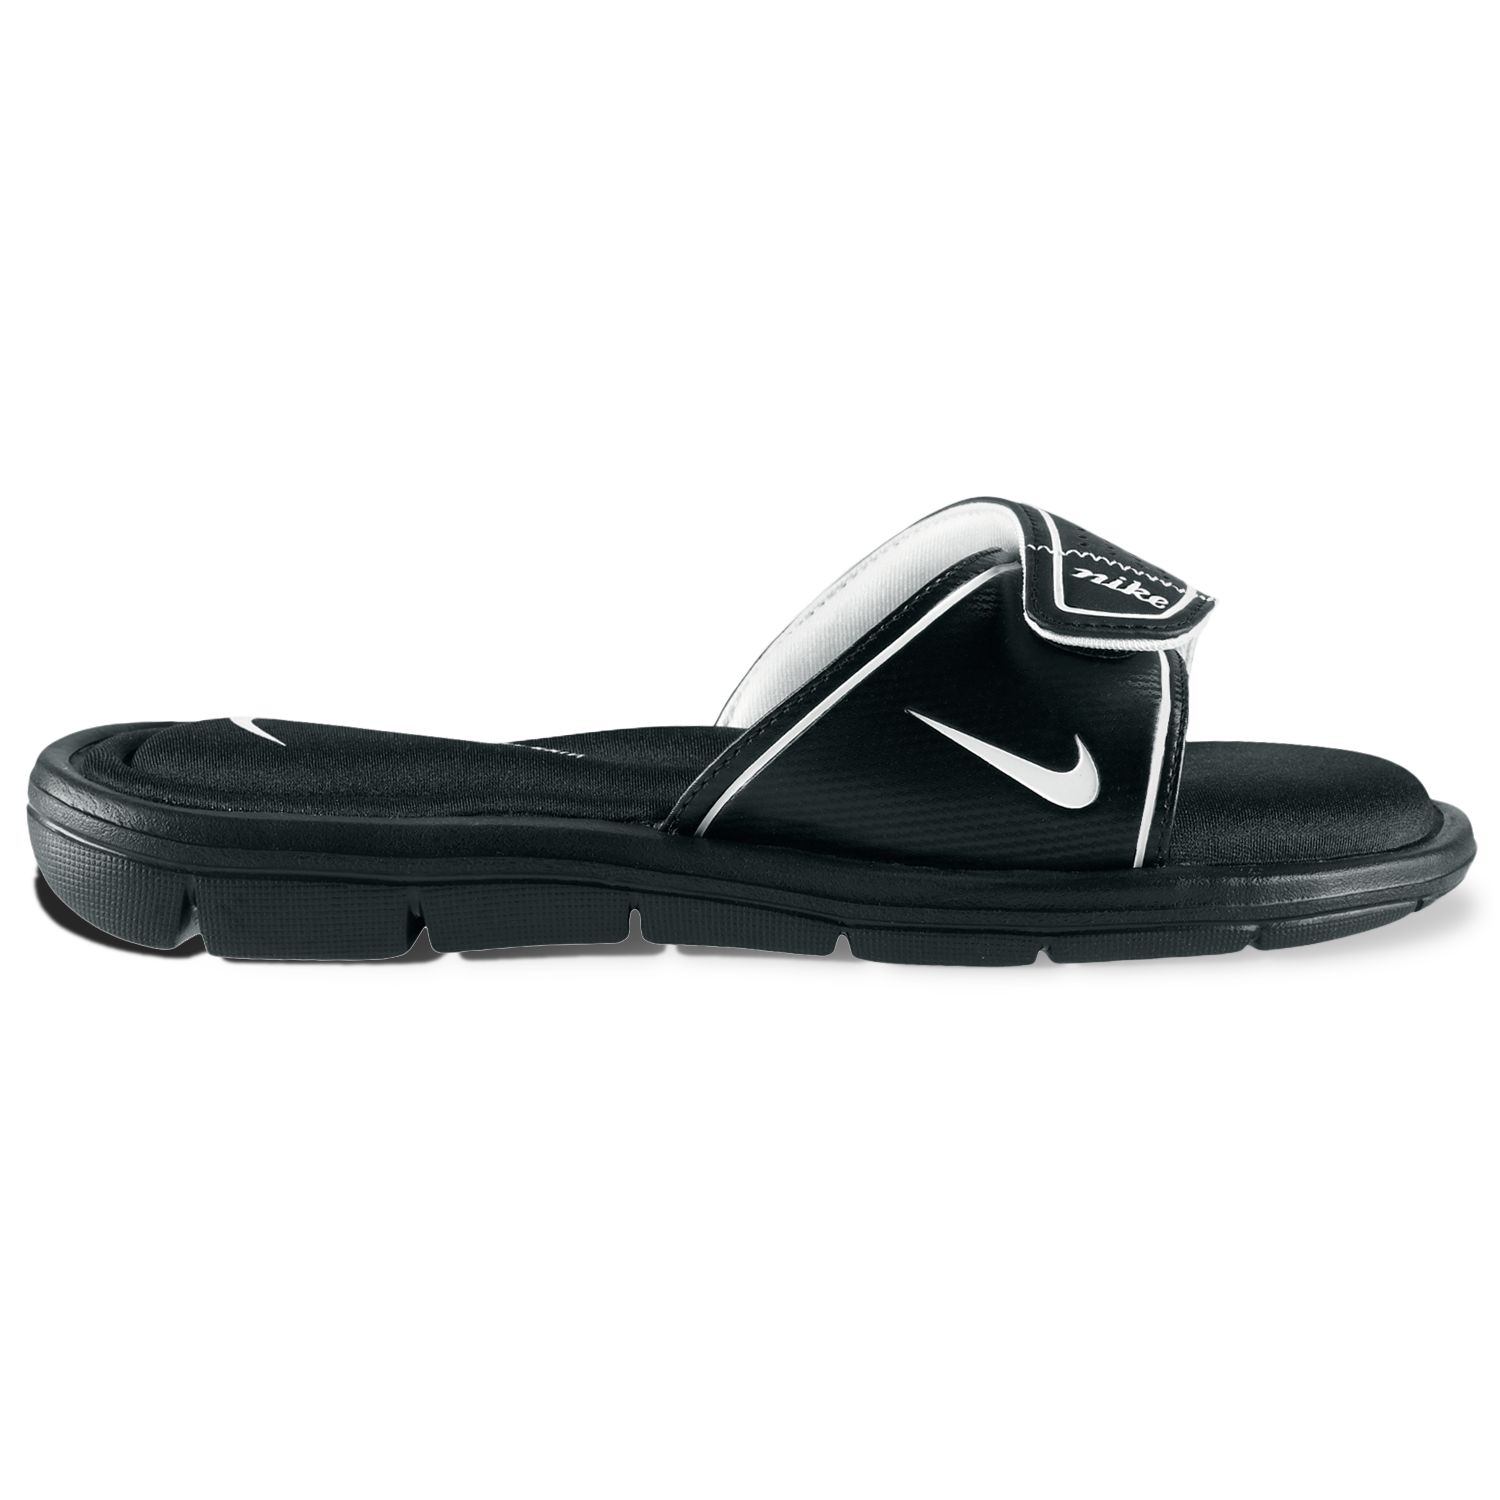 Nike Women's Comfort Slide Sandals